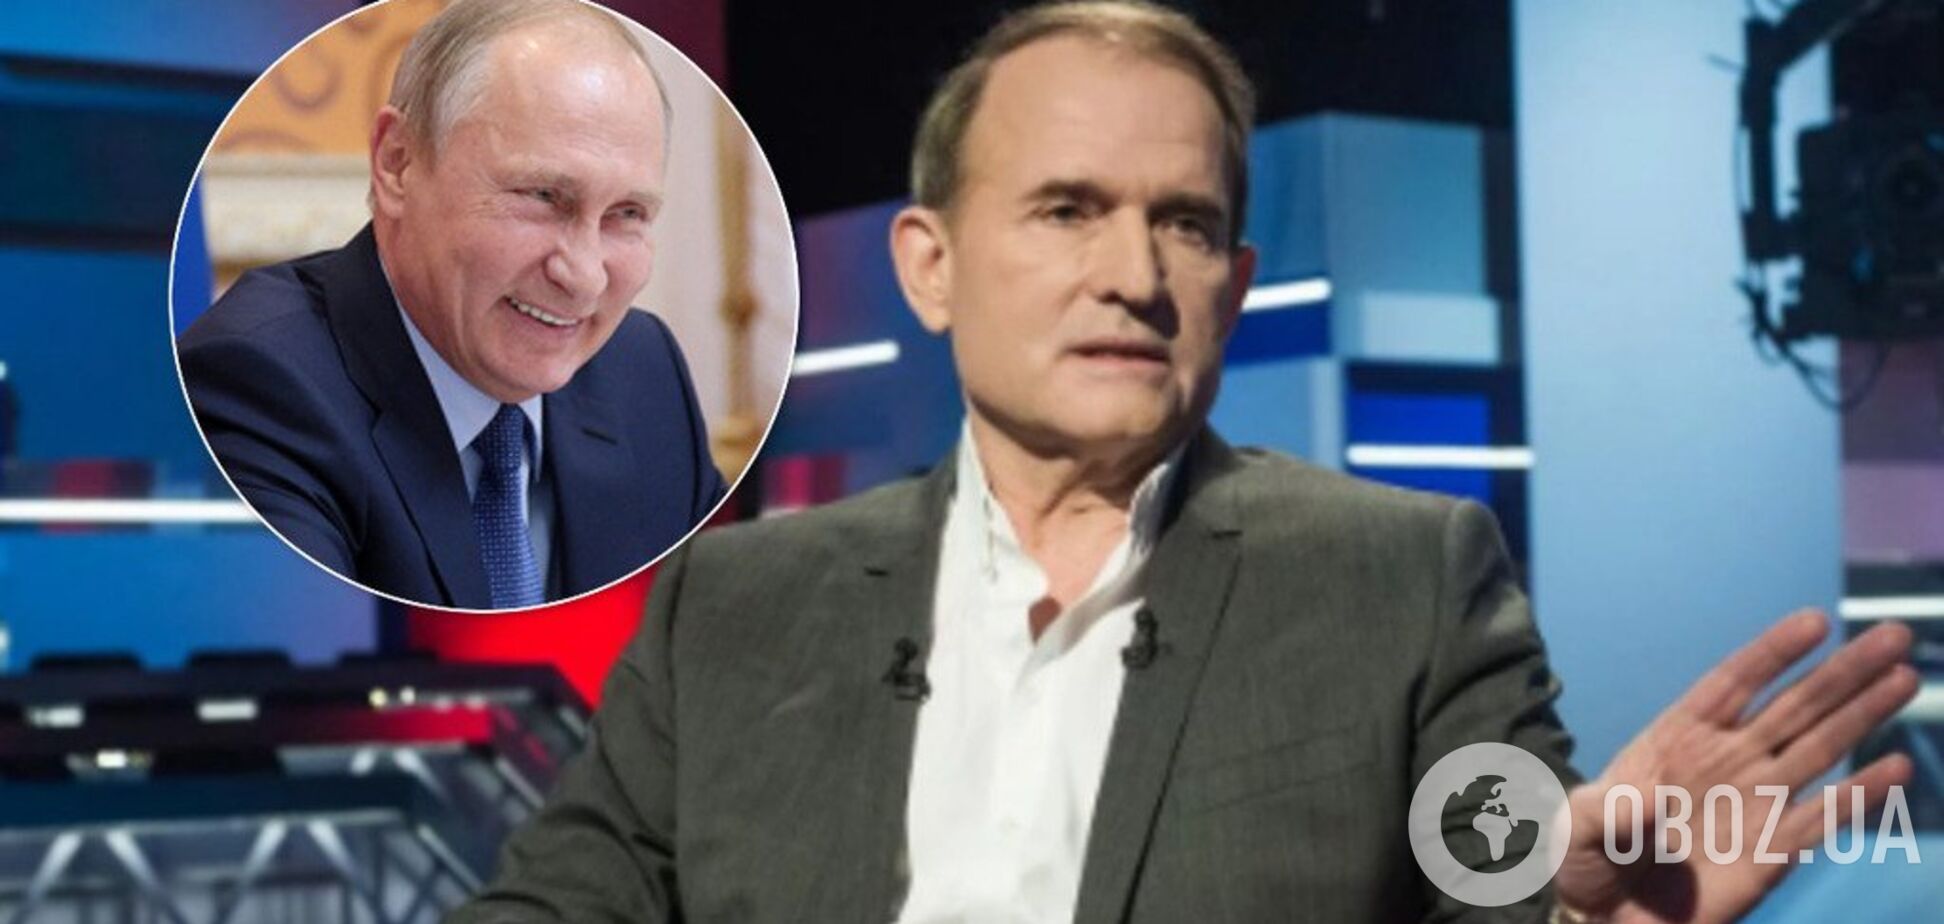 'Россия – не агрессор': канал Медведчука перед выборами покажет фильм с Путиным